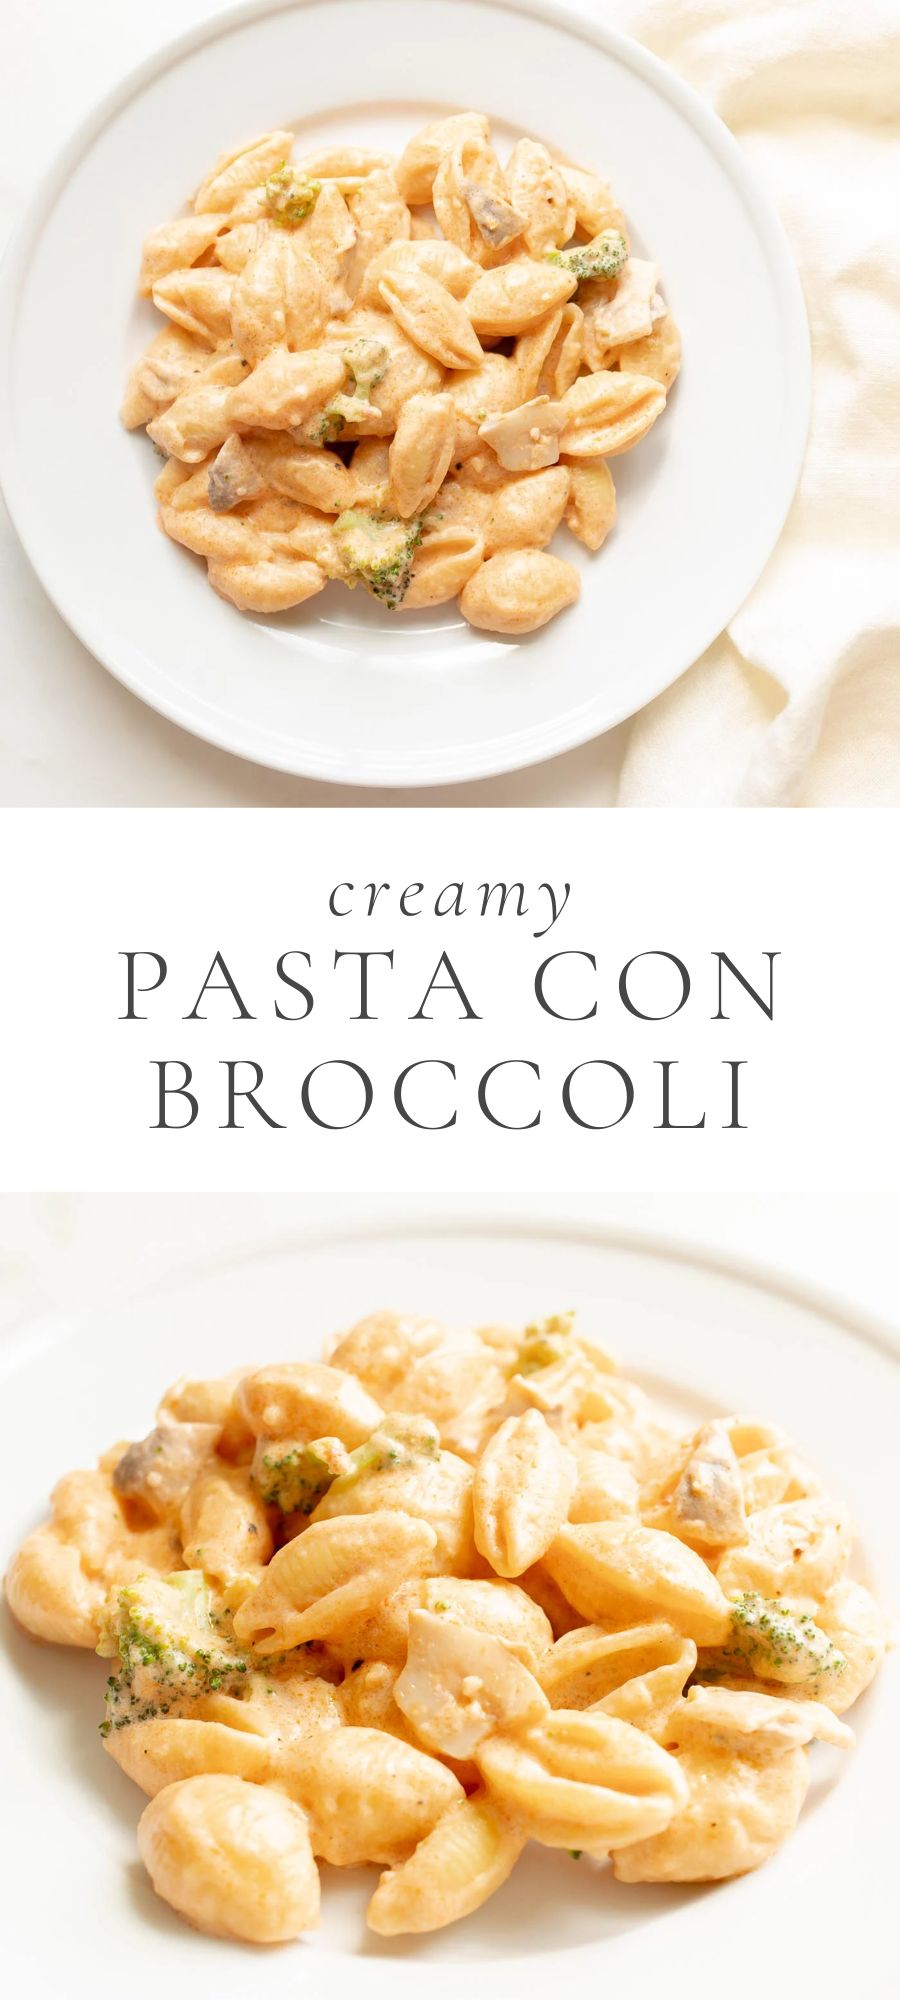 pasta con broccoli with white plates